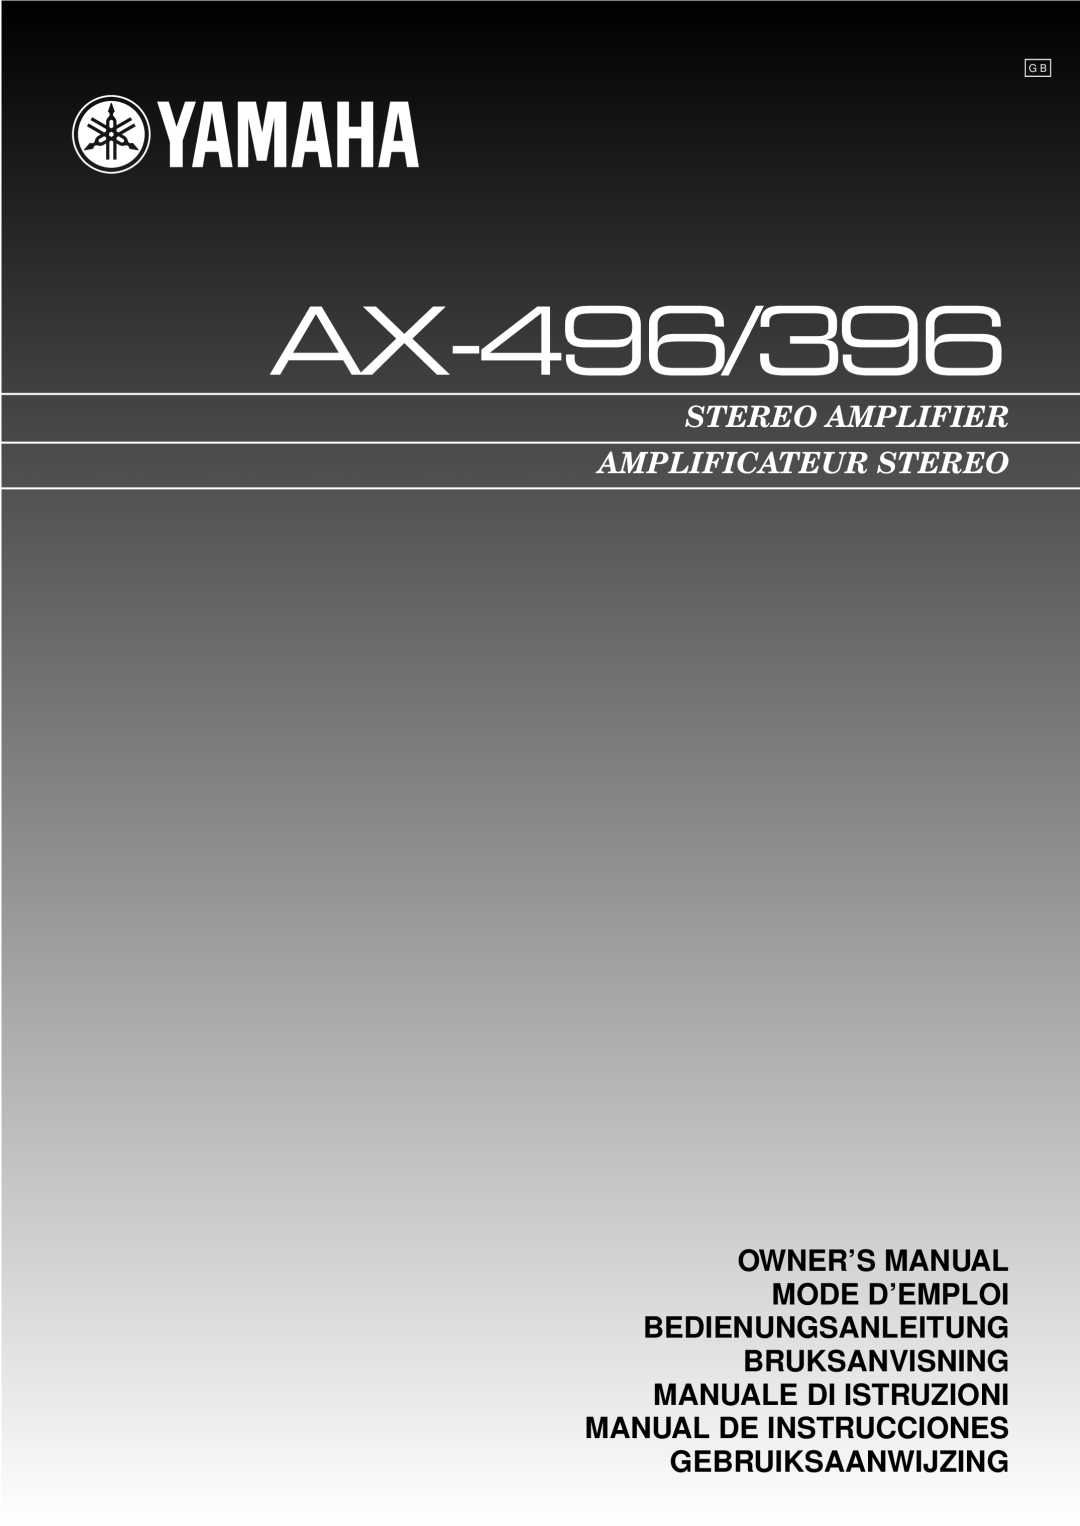 Yamaha AX-496/396 owner manual Bruksanvisning Manuale Di Istruzioni, Manual De Instrucciones Gebruiksaanwijzing 